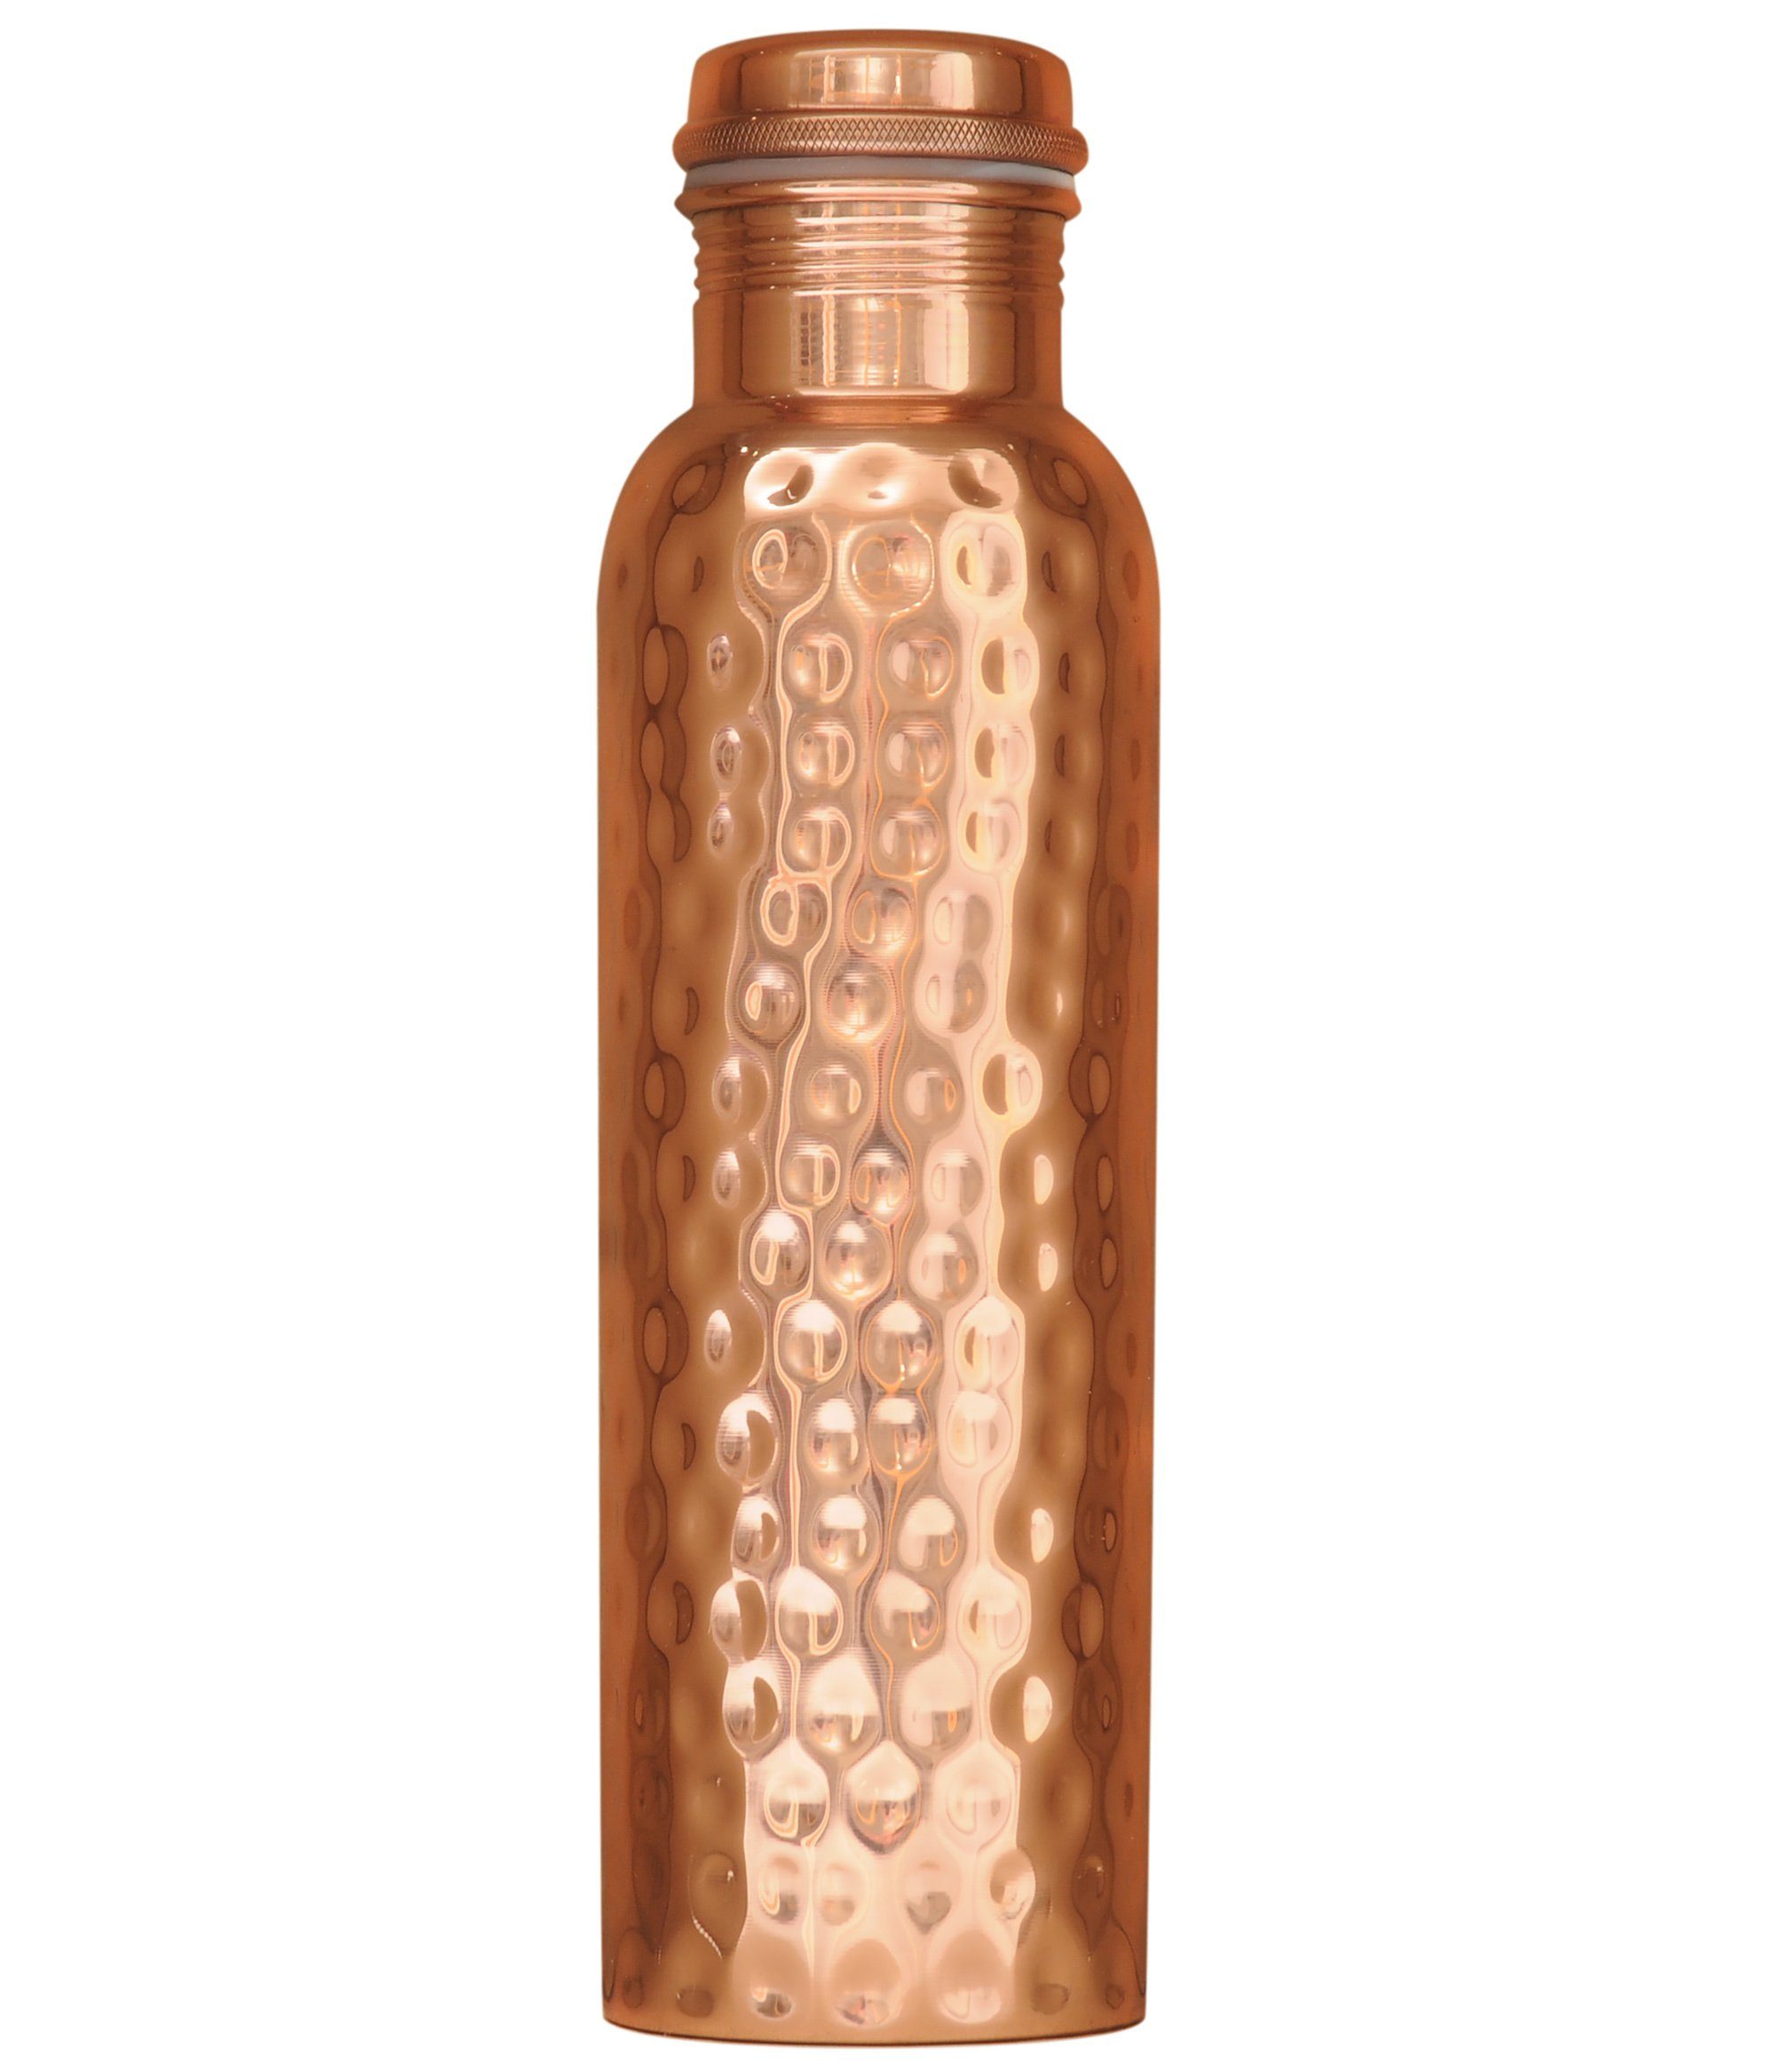 Yogishop Trinkflasche Kupferflasche gehämmert, 0,9 l, Edle Design-Kupferwasserflasche.